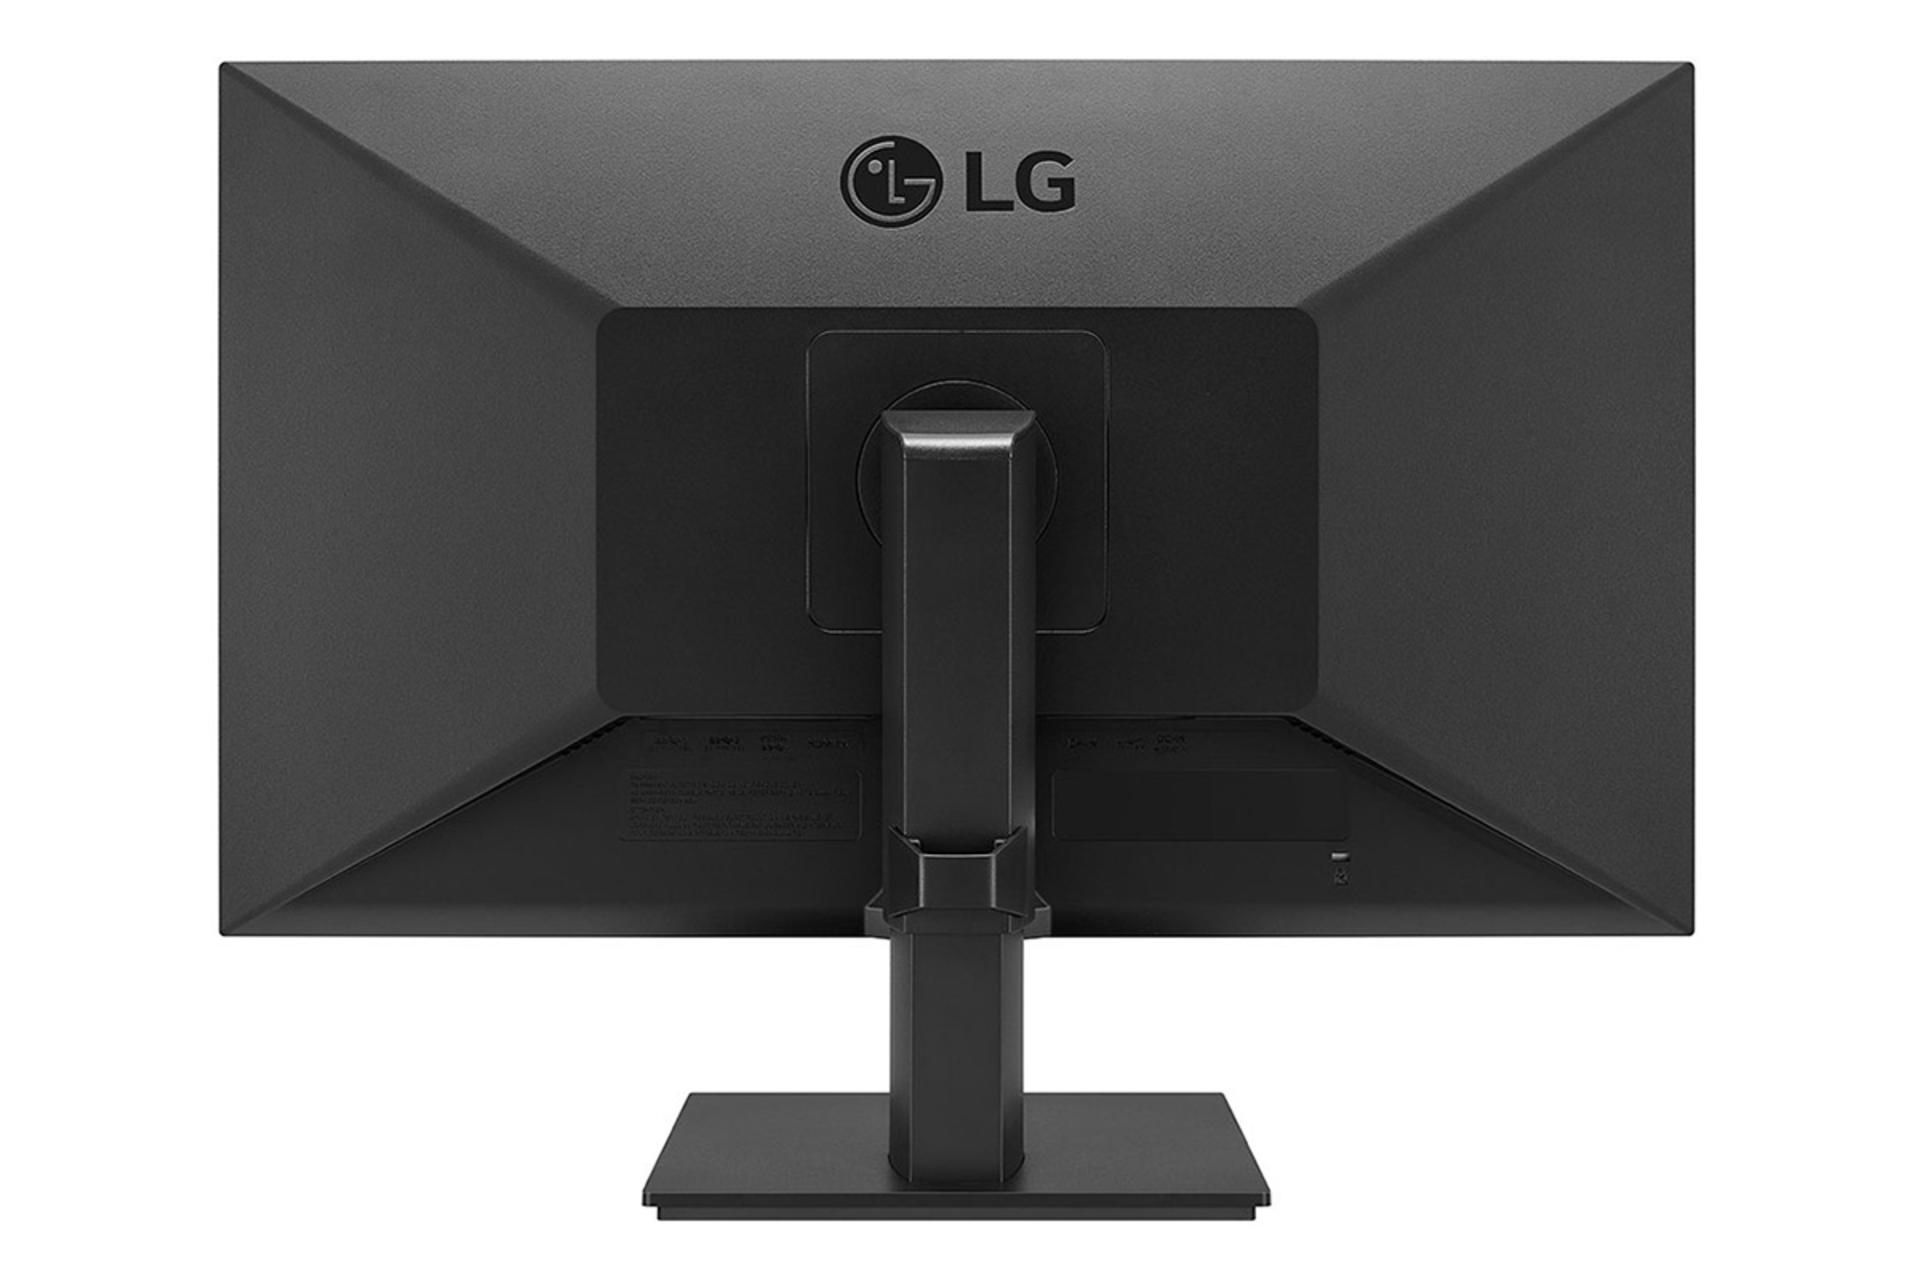 LG 24BL650C / ال جی